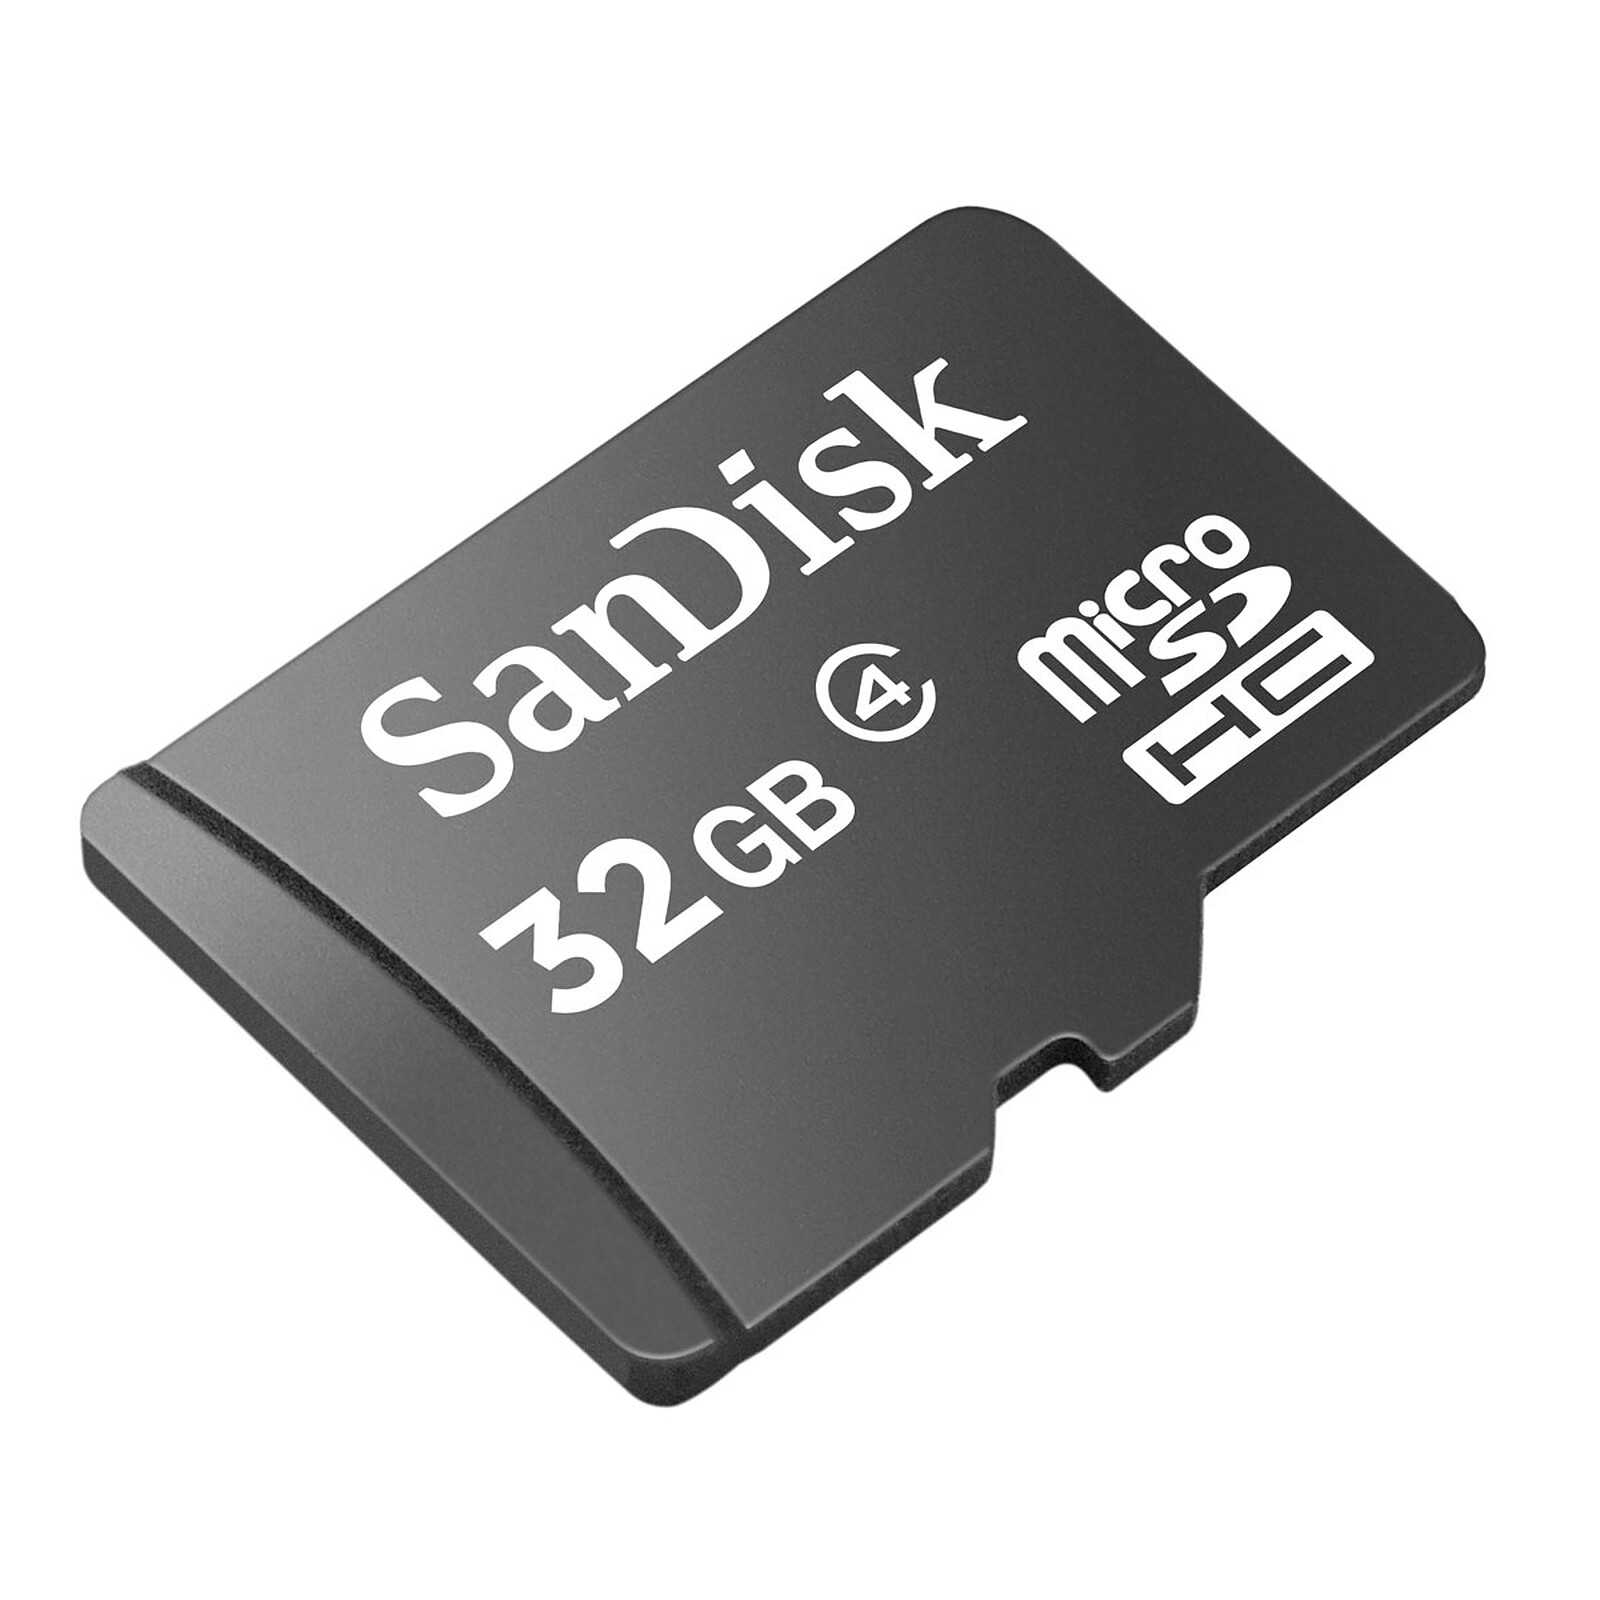 SanDisk Carte mémoire Extreme Pro CompactFlash 32 Go - Carte mémoire -  Garantie 3 ans LDLC